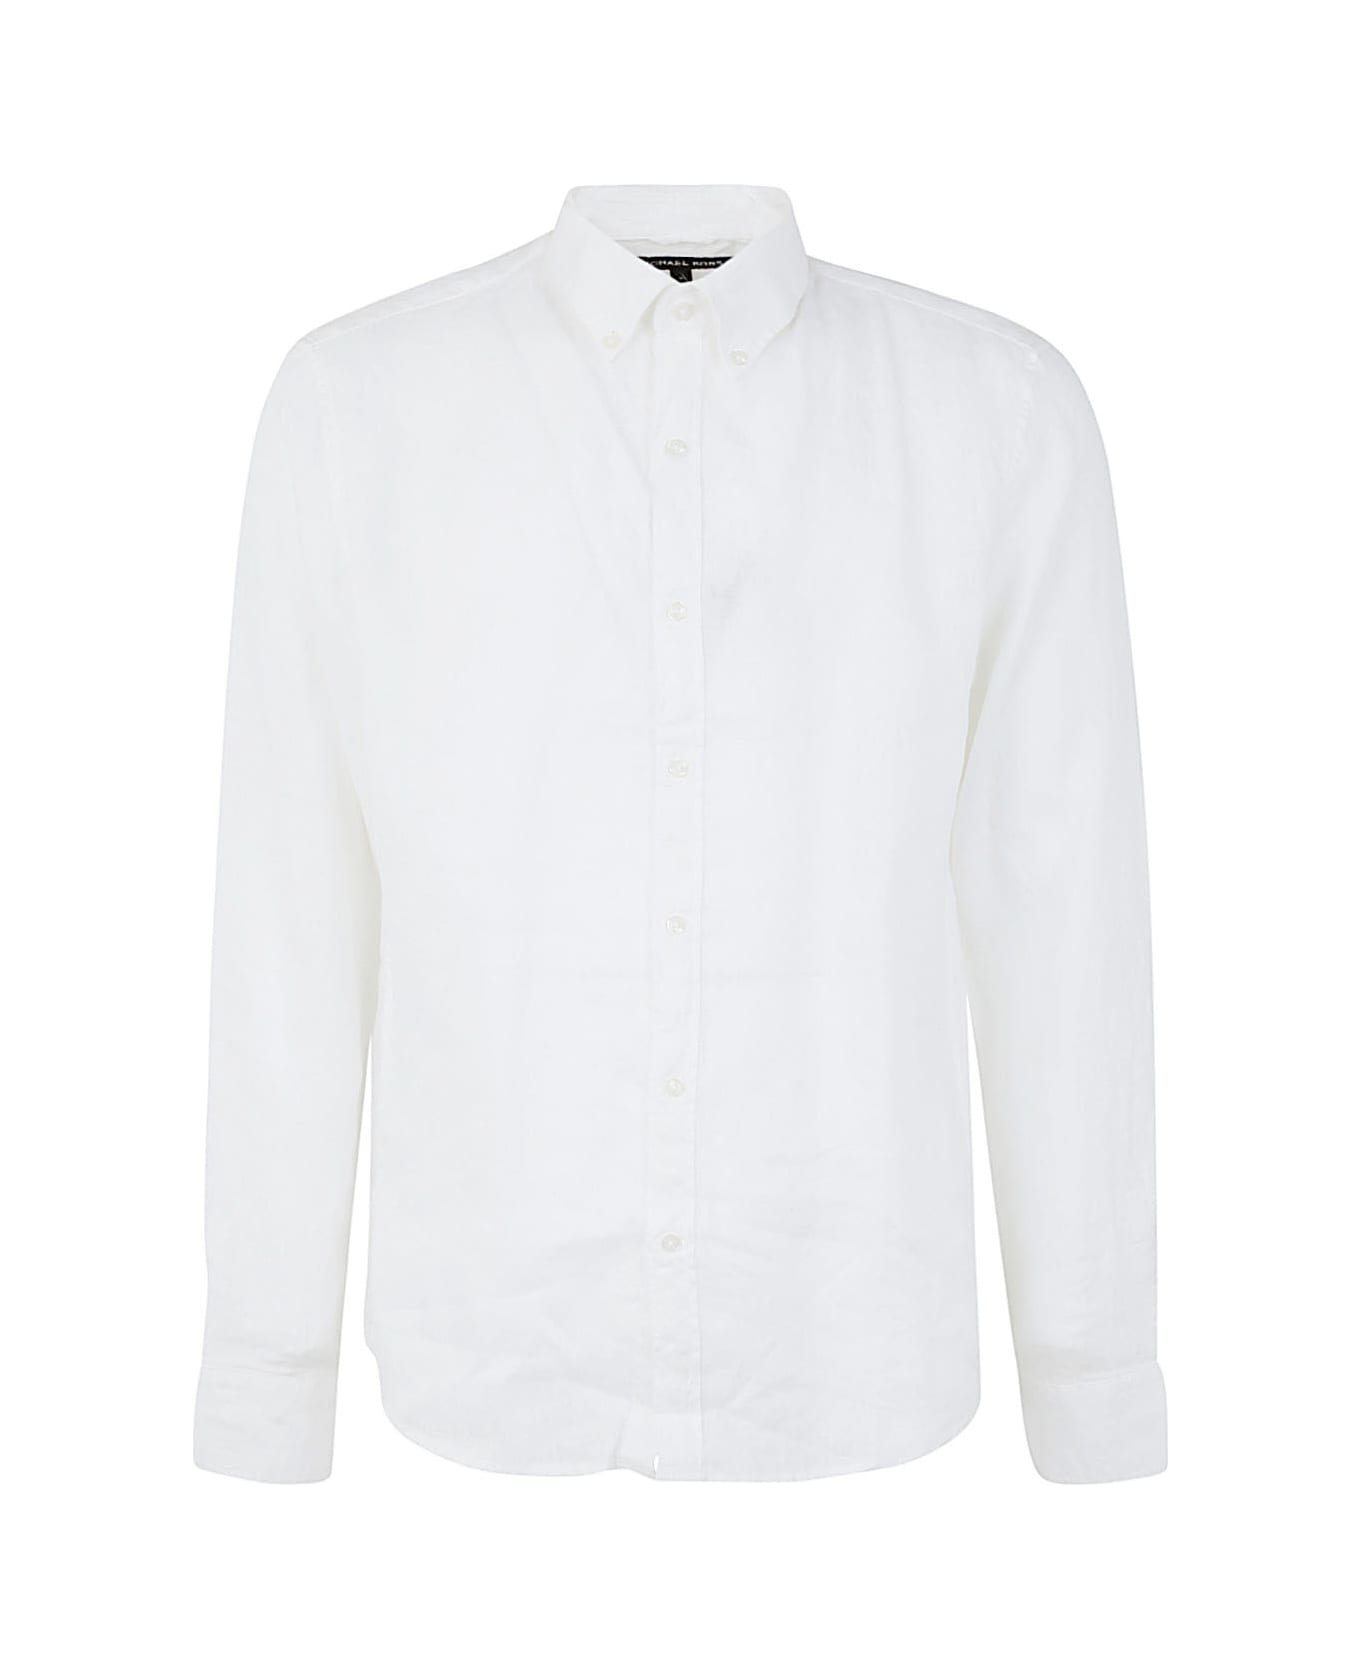 Michael Kors Long Sleeved Linen Shirt - White シャツ